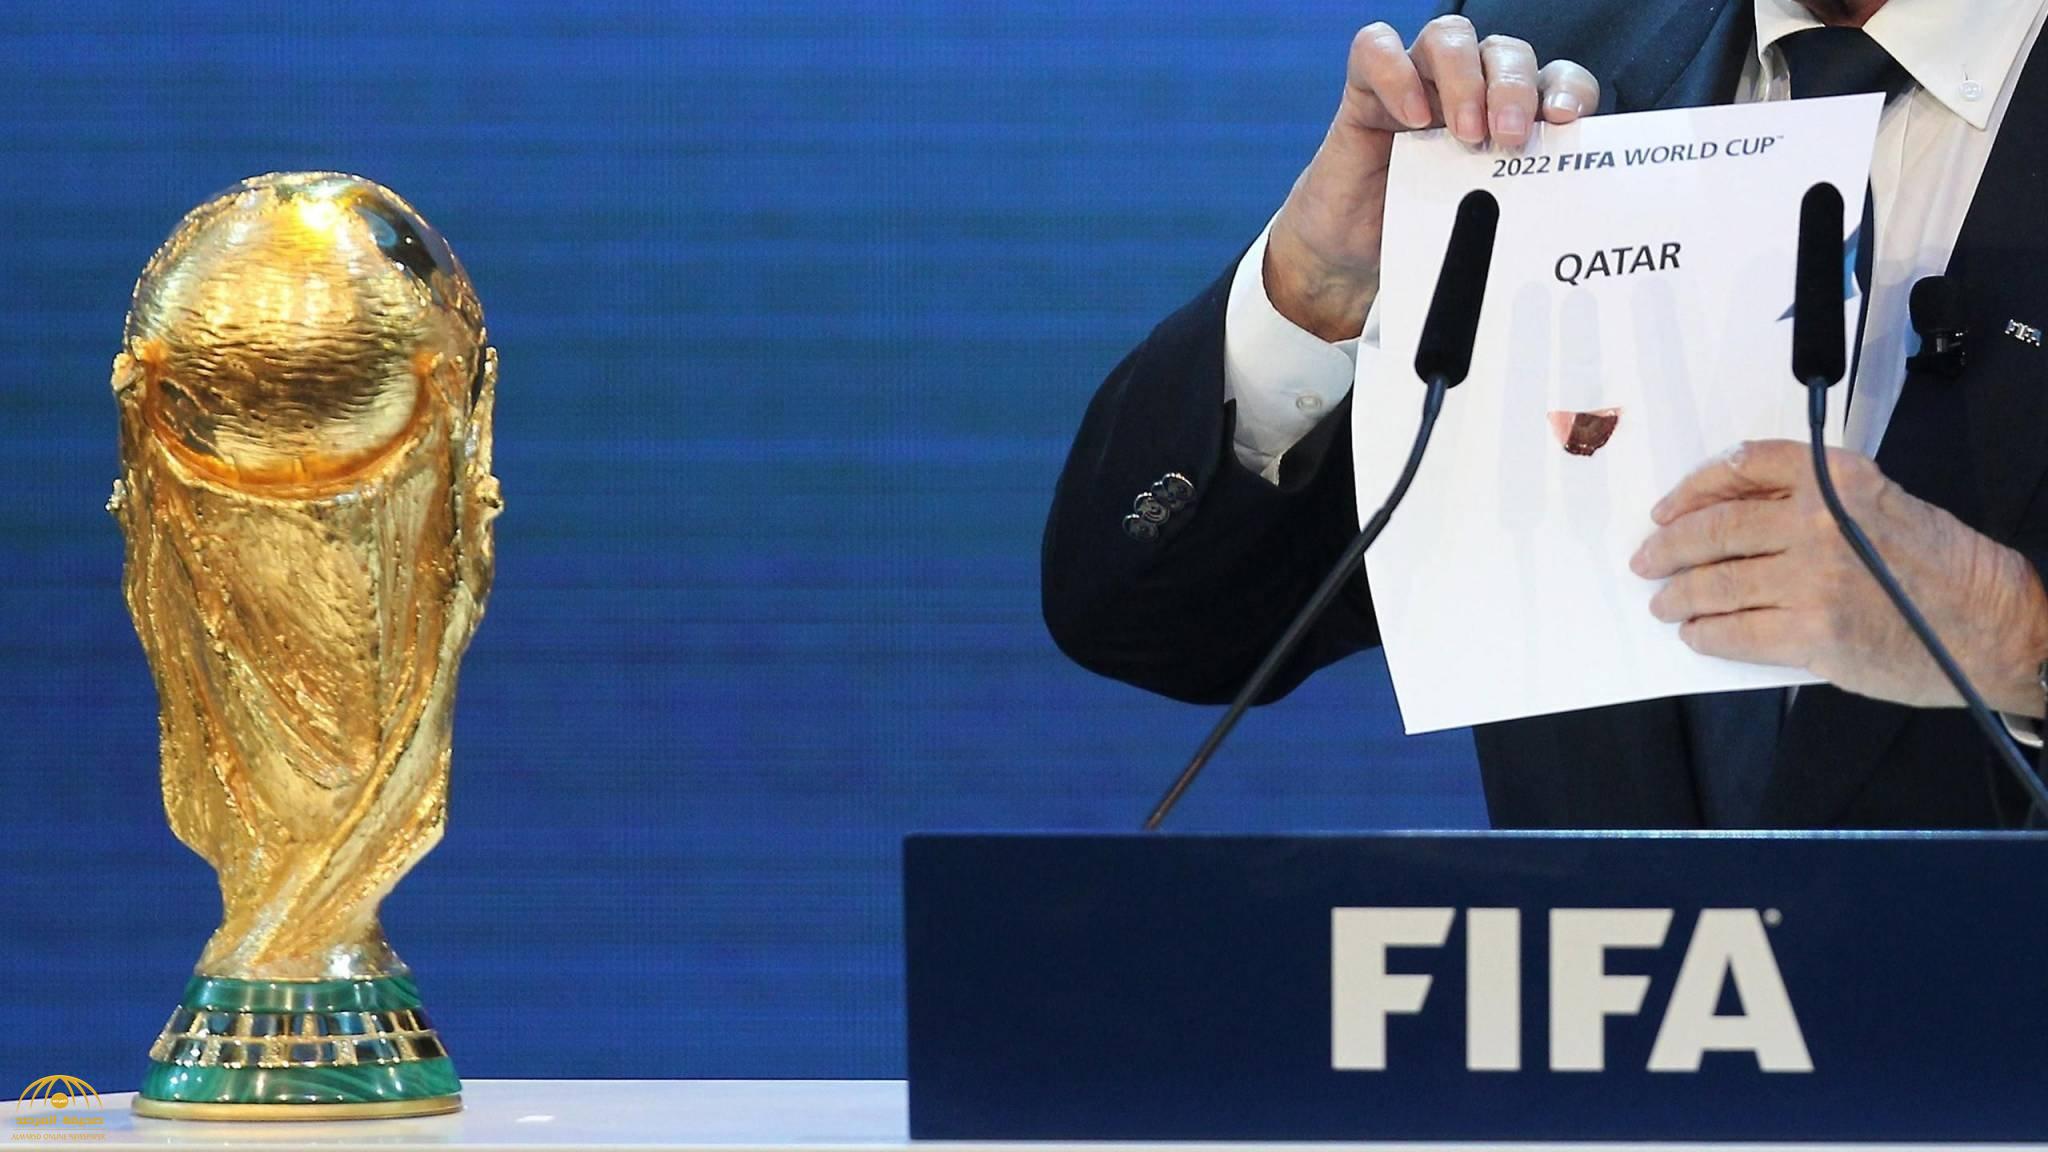 بعد فضيحة رشاوى "فيفا".. مفاجأة عن موقف البريطانيين من تنظيم قطر لكأس العالم 2022